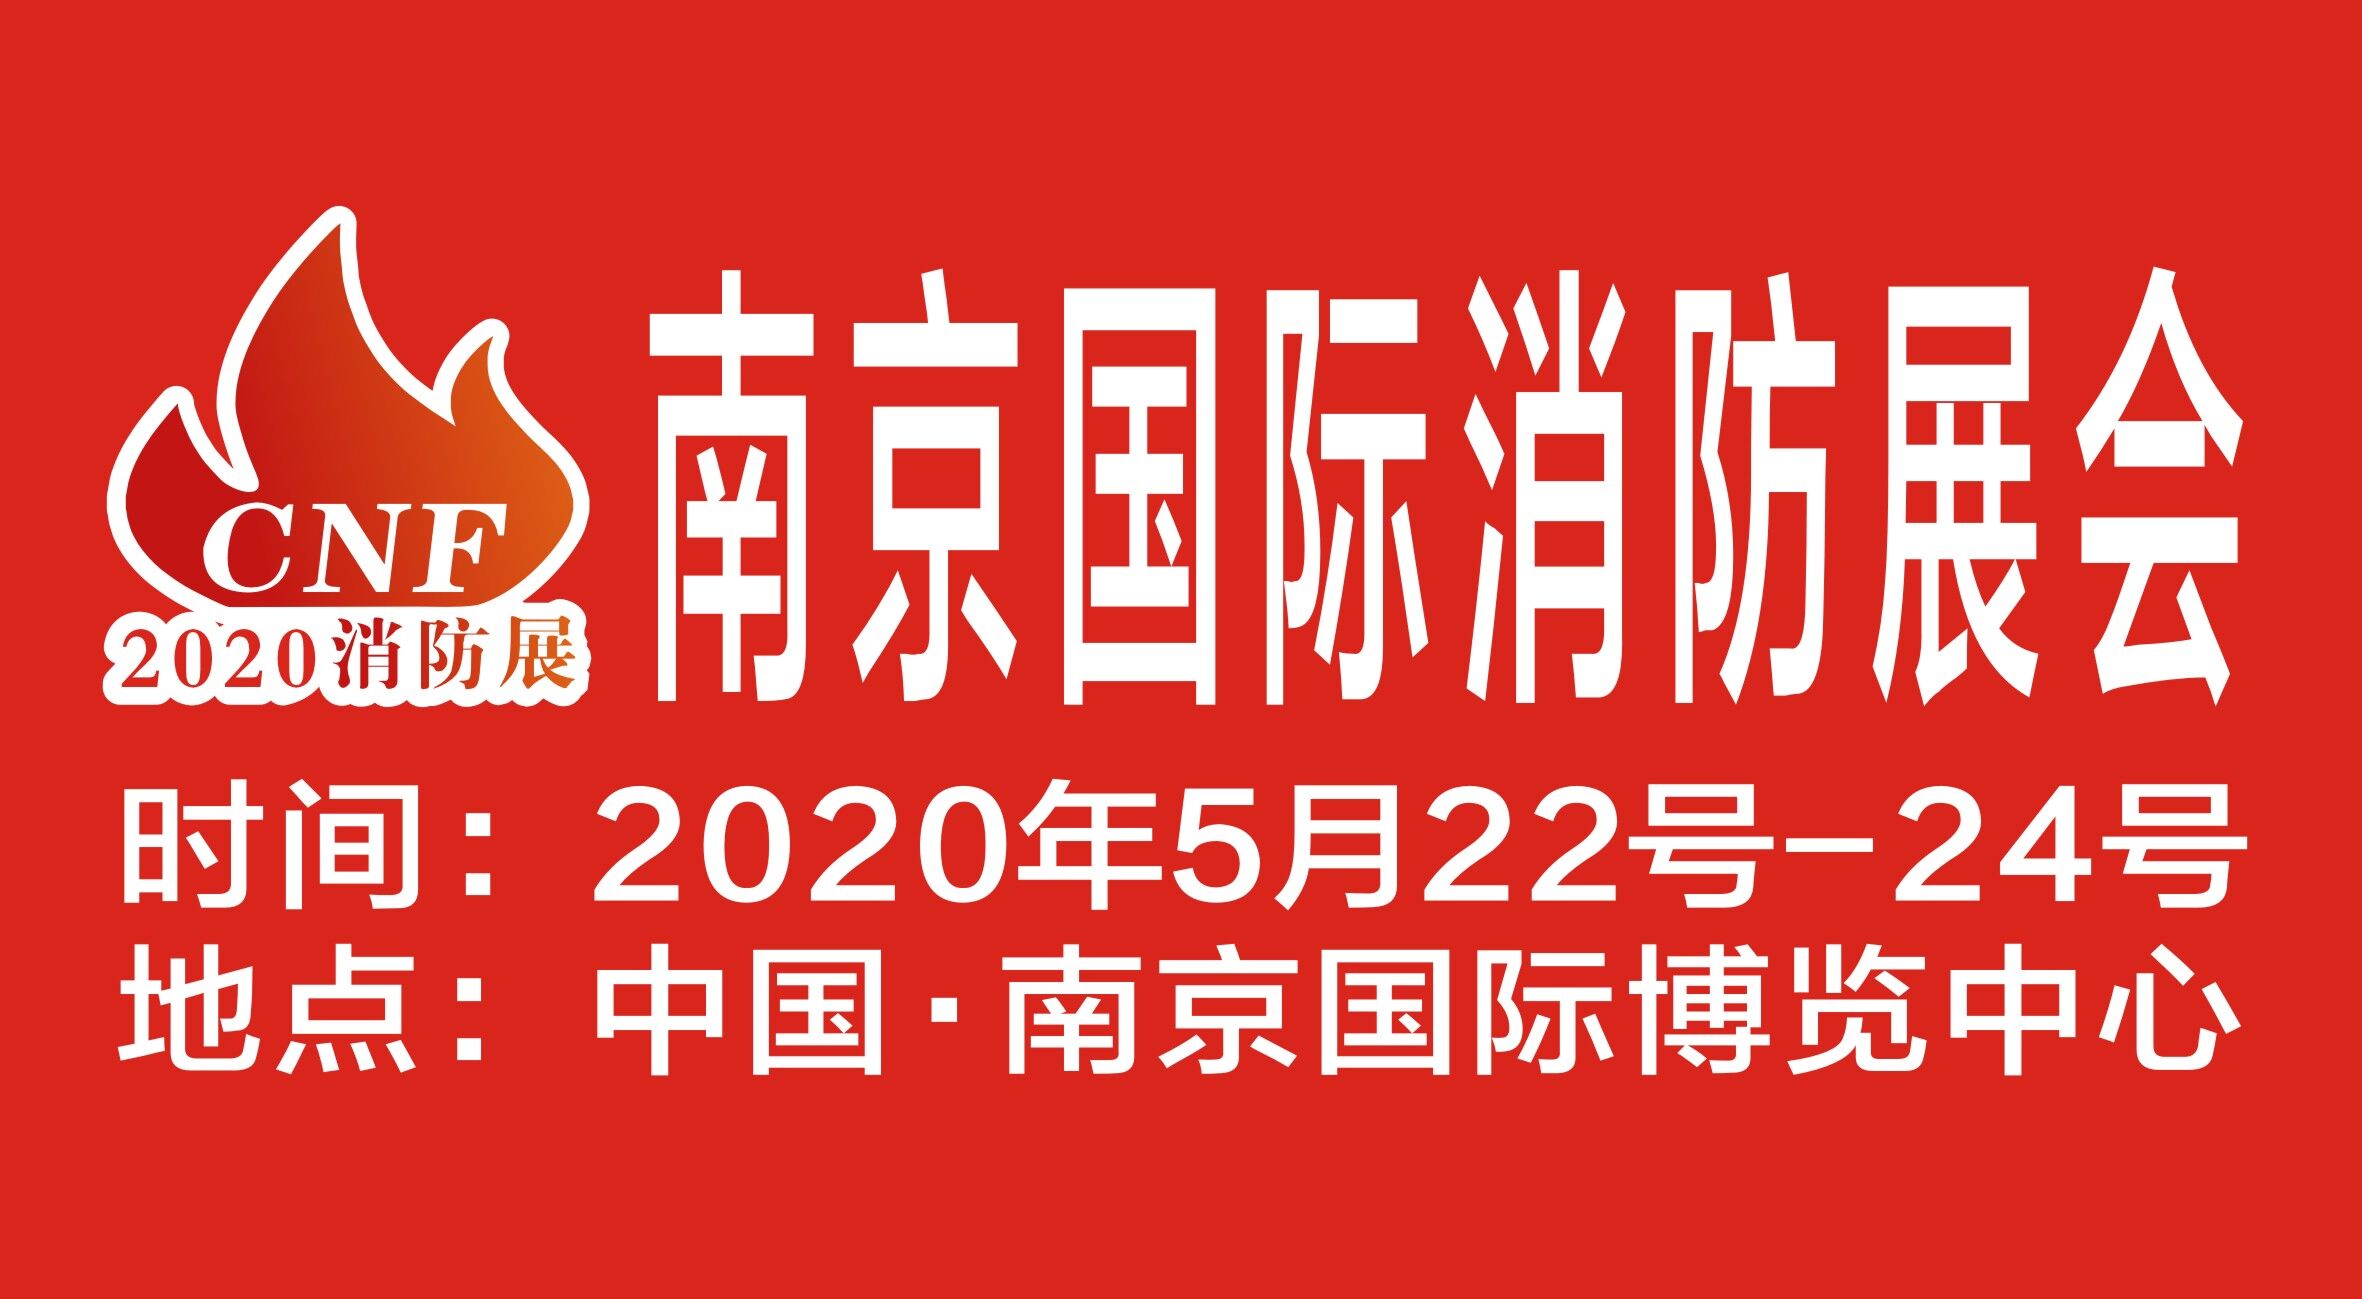 CNF南京国际消防展览会 | 亚泓通风邀您参观5月22-24日